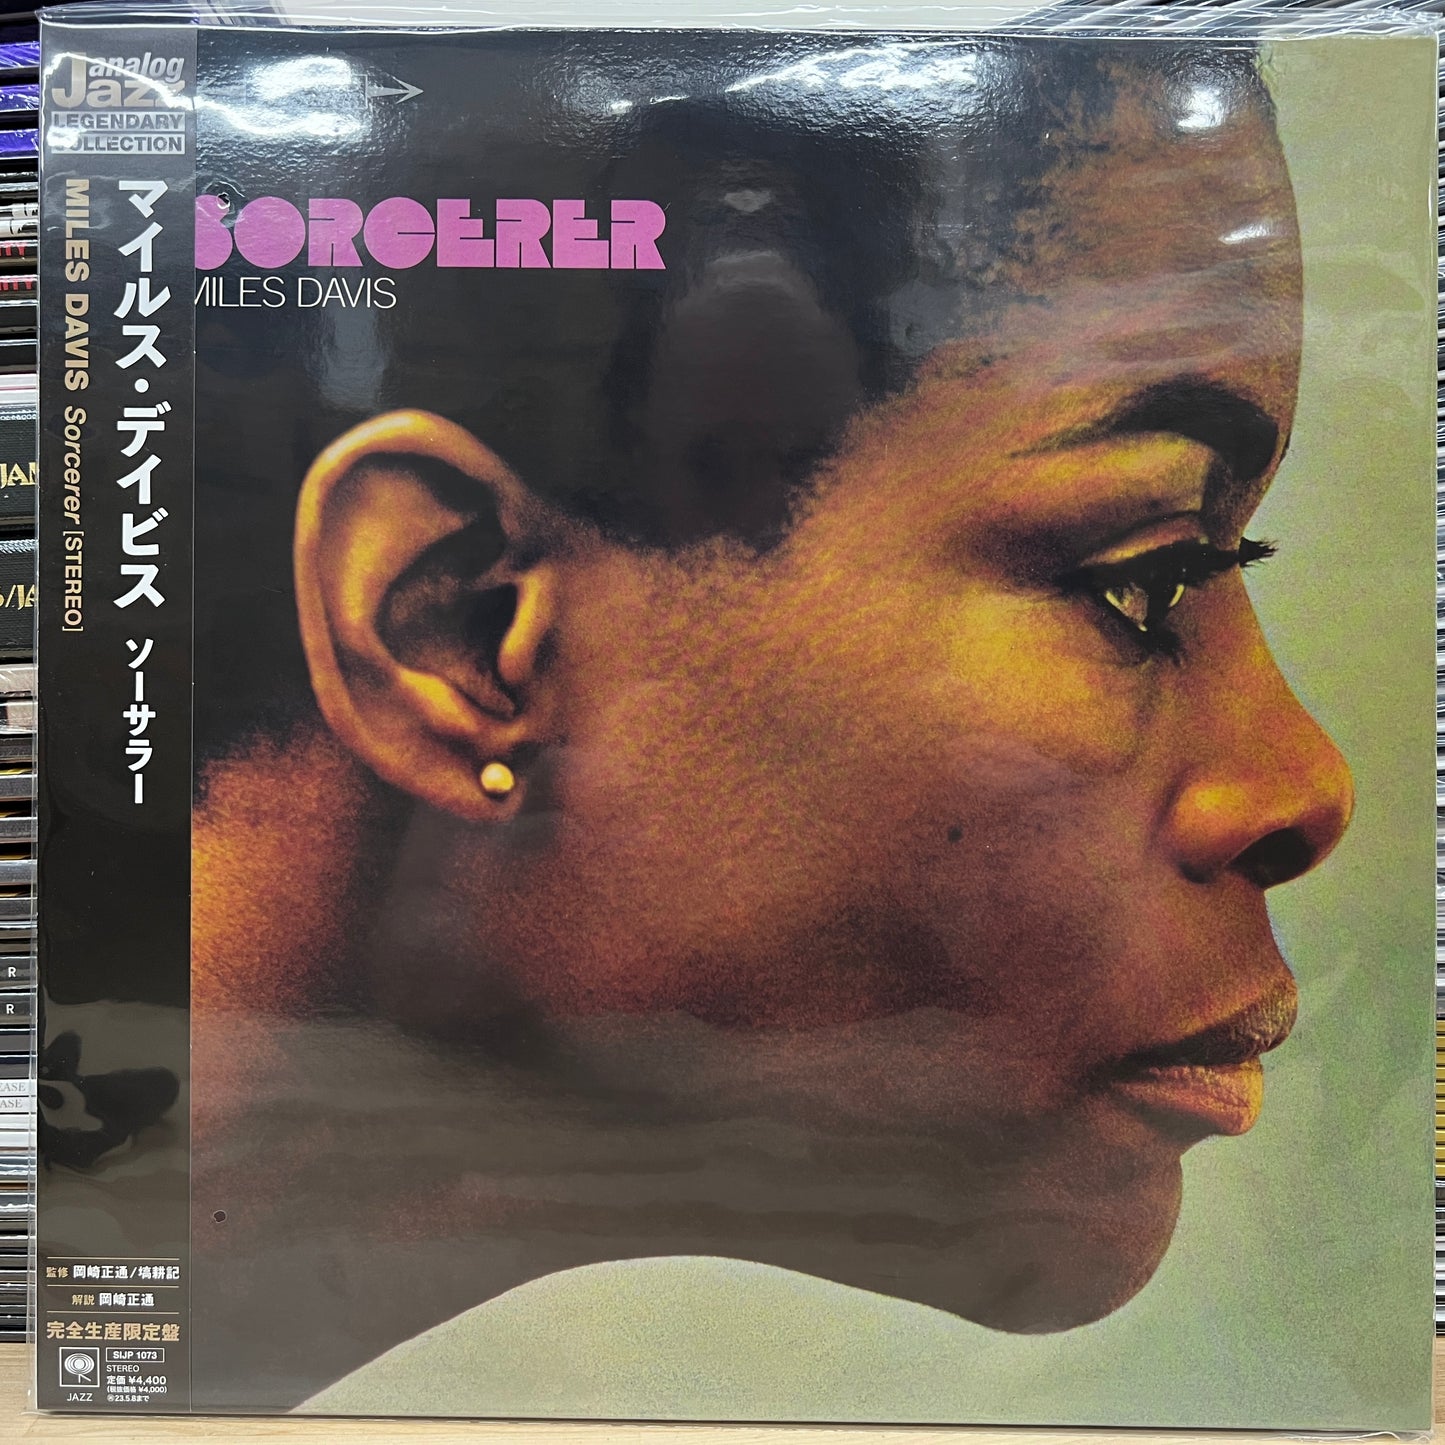 Miles Davis - Sorcerer - Japanese Import LP